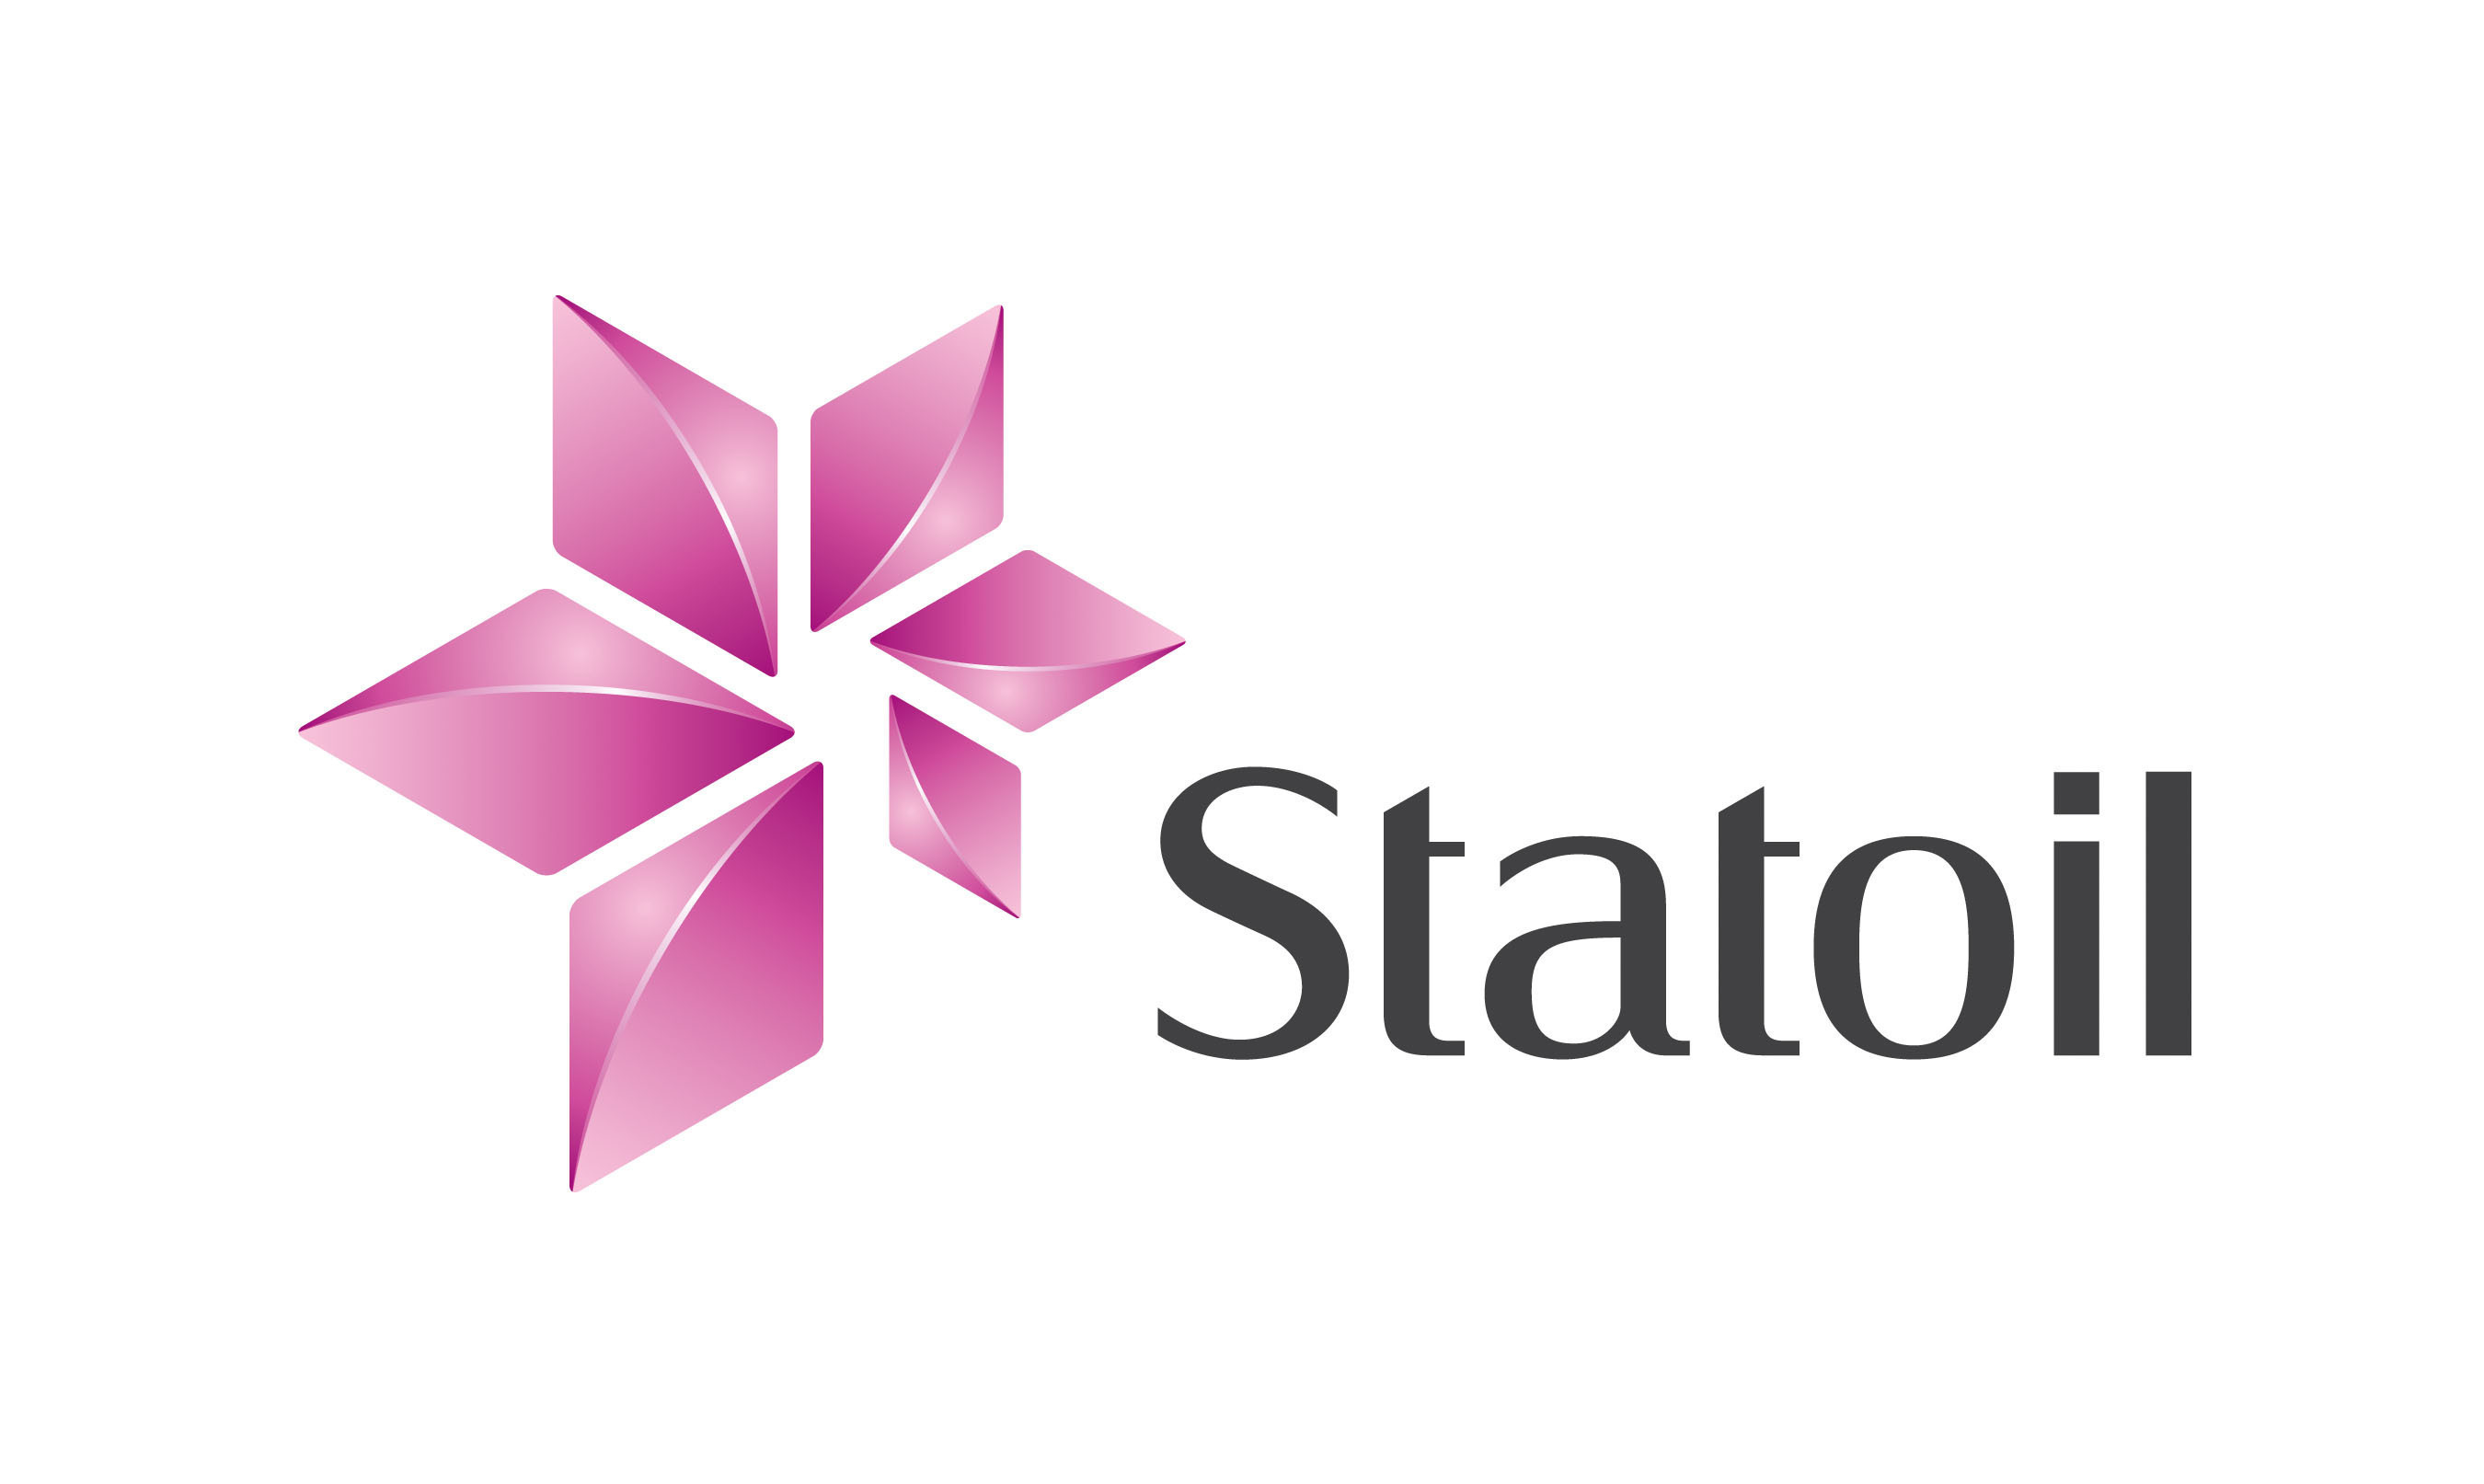 StatOil Logo. (PRNewsFoto/StatOil) (PRNewsFoto/)